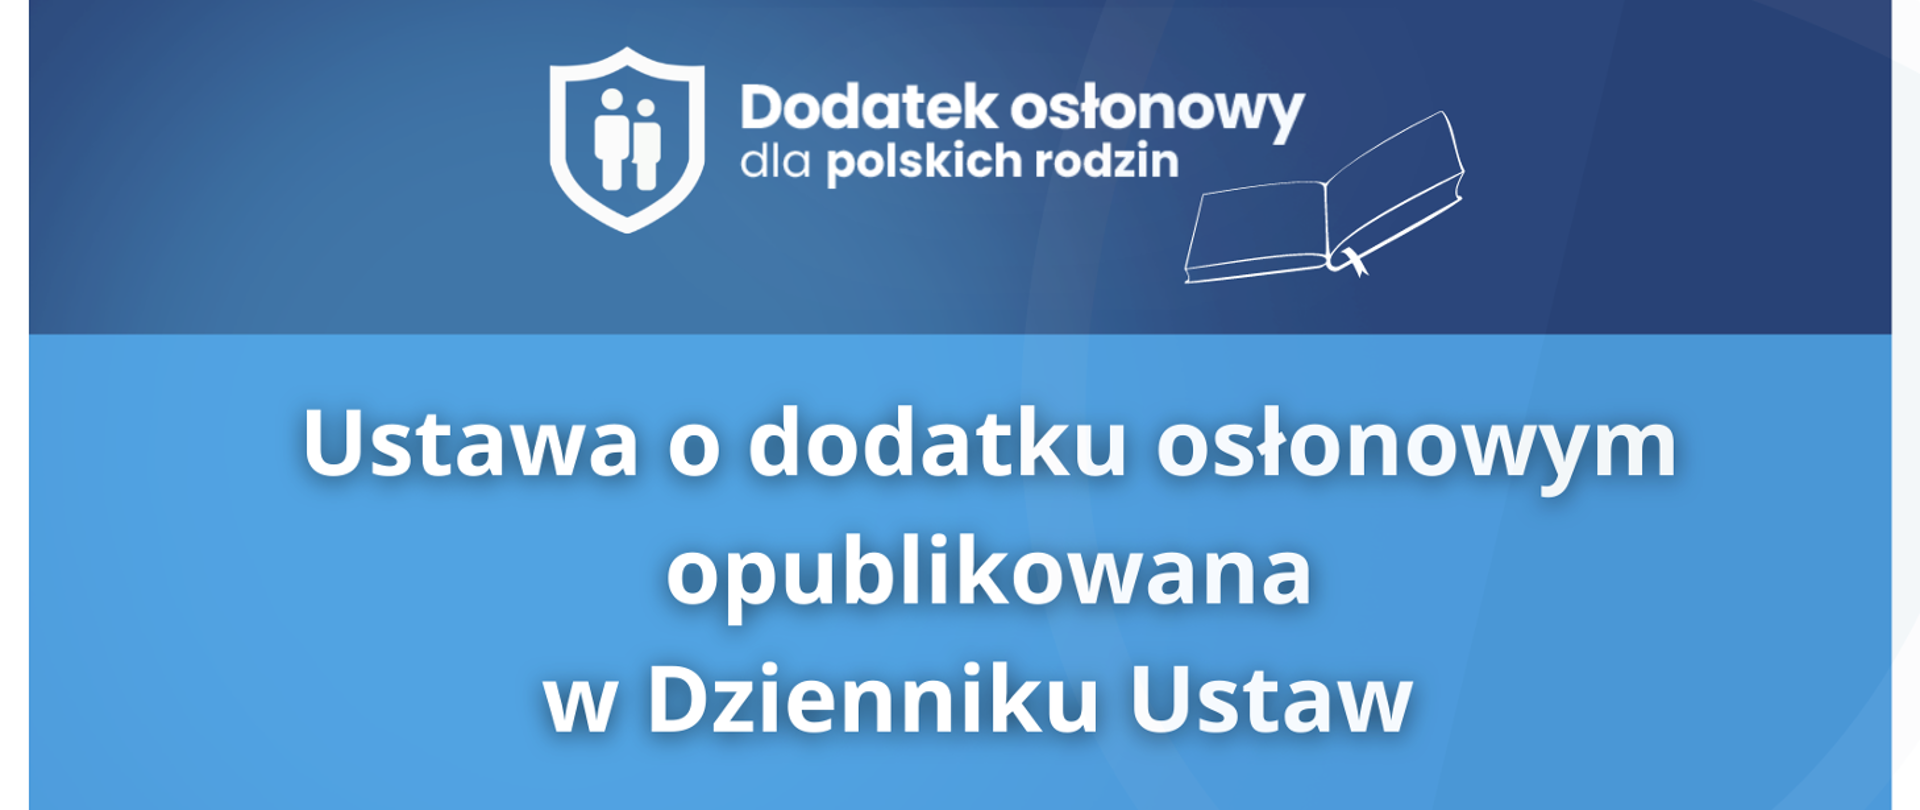 Ilustracja do artykułu - napisy na niebieskim tle: "Dodatek osłonowy dla polskich rodzin" oraz "Ustawa o dodatku osłonowym opublikowana w Dzienniku Ustaw"